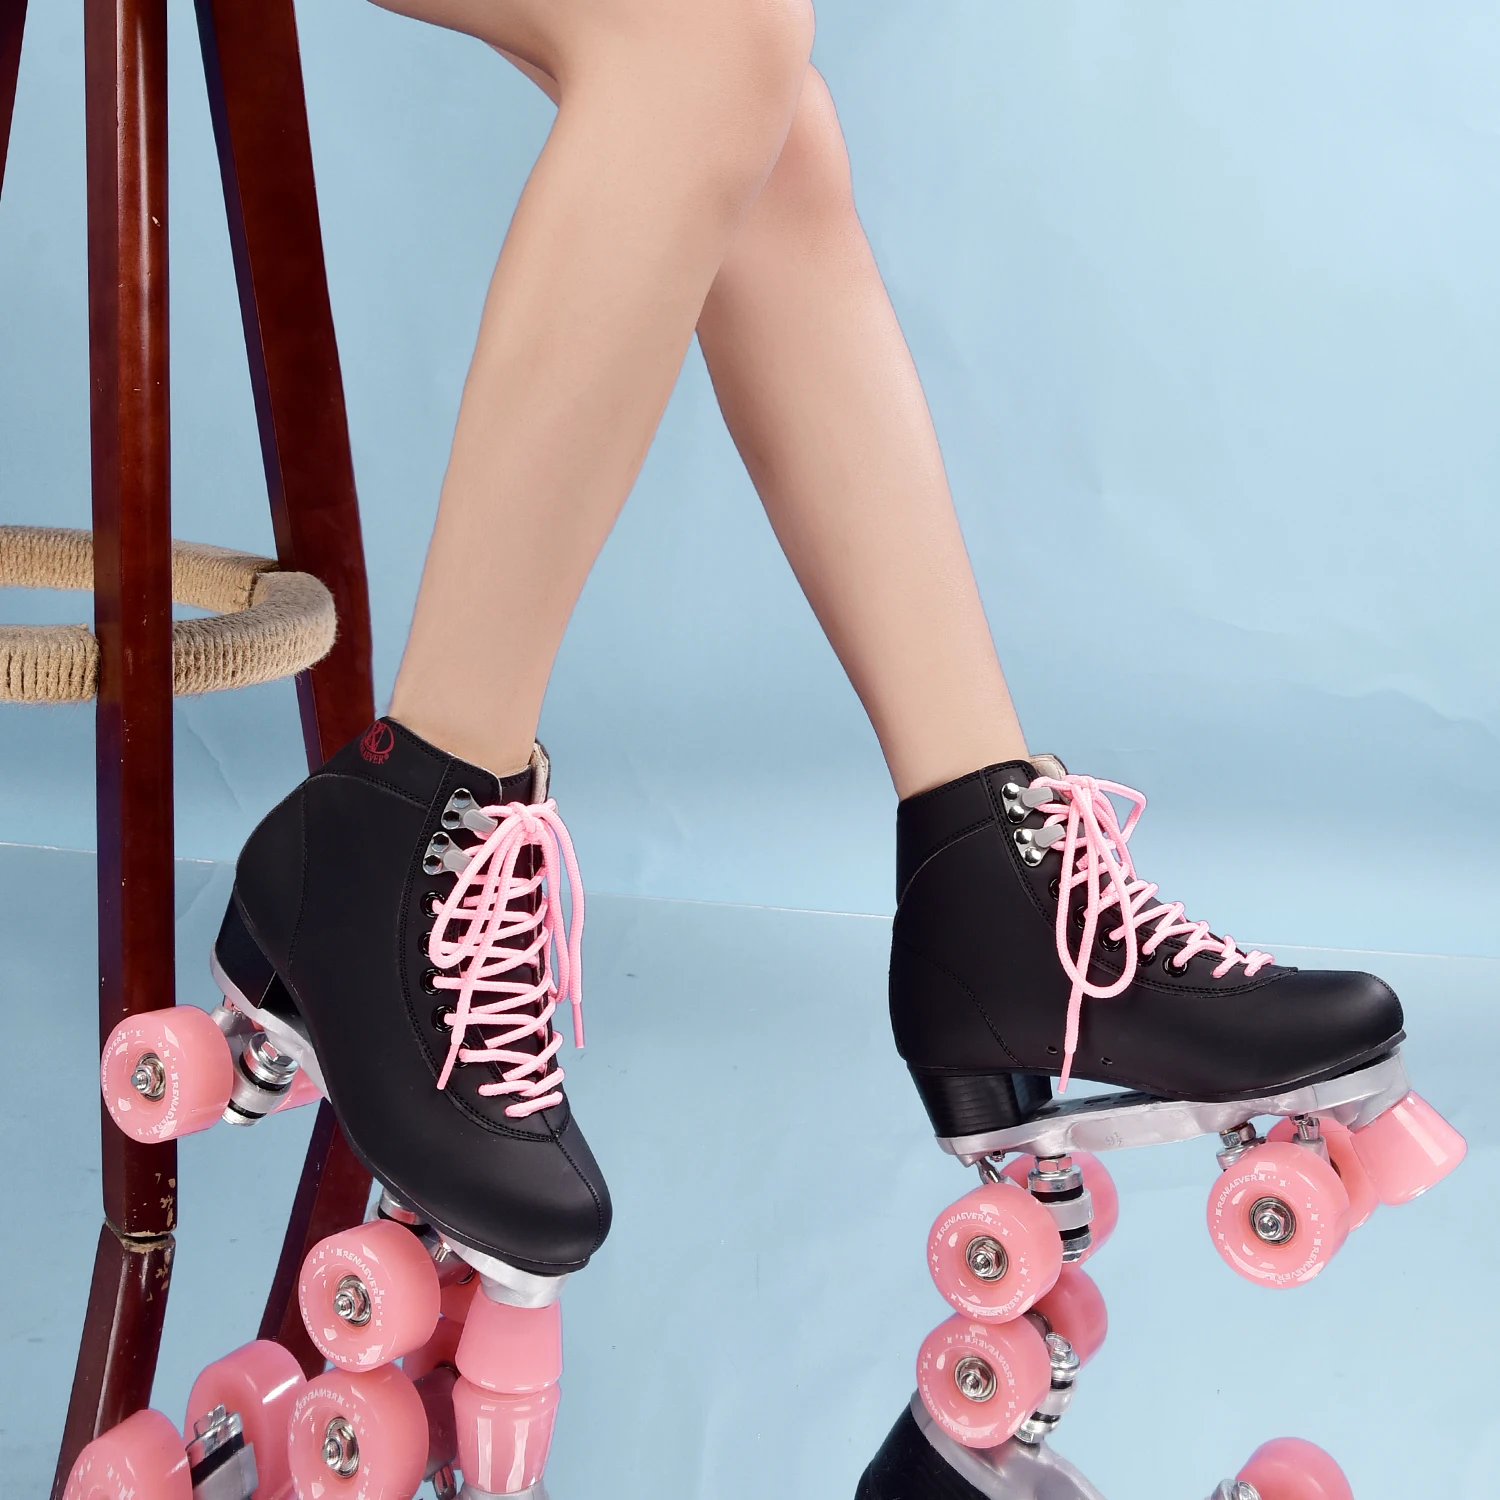 reniaever roller skates